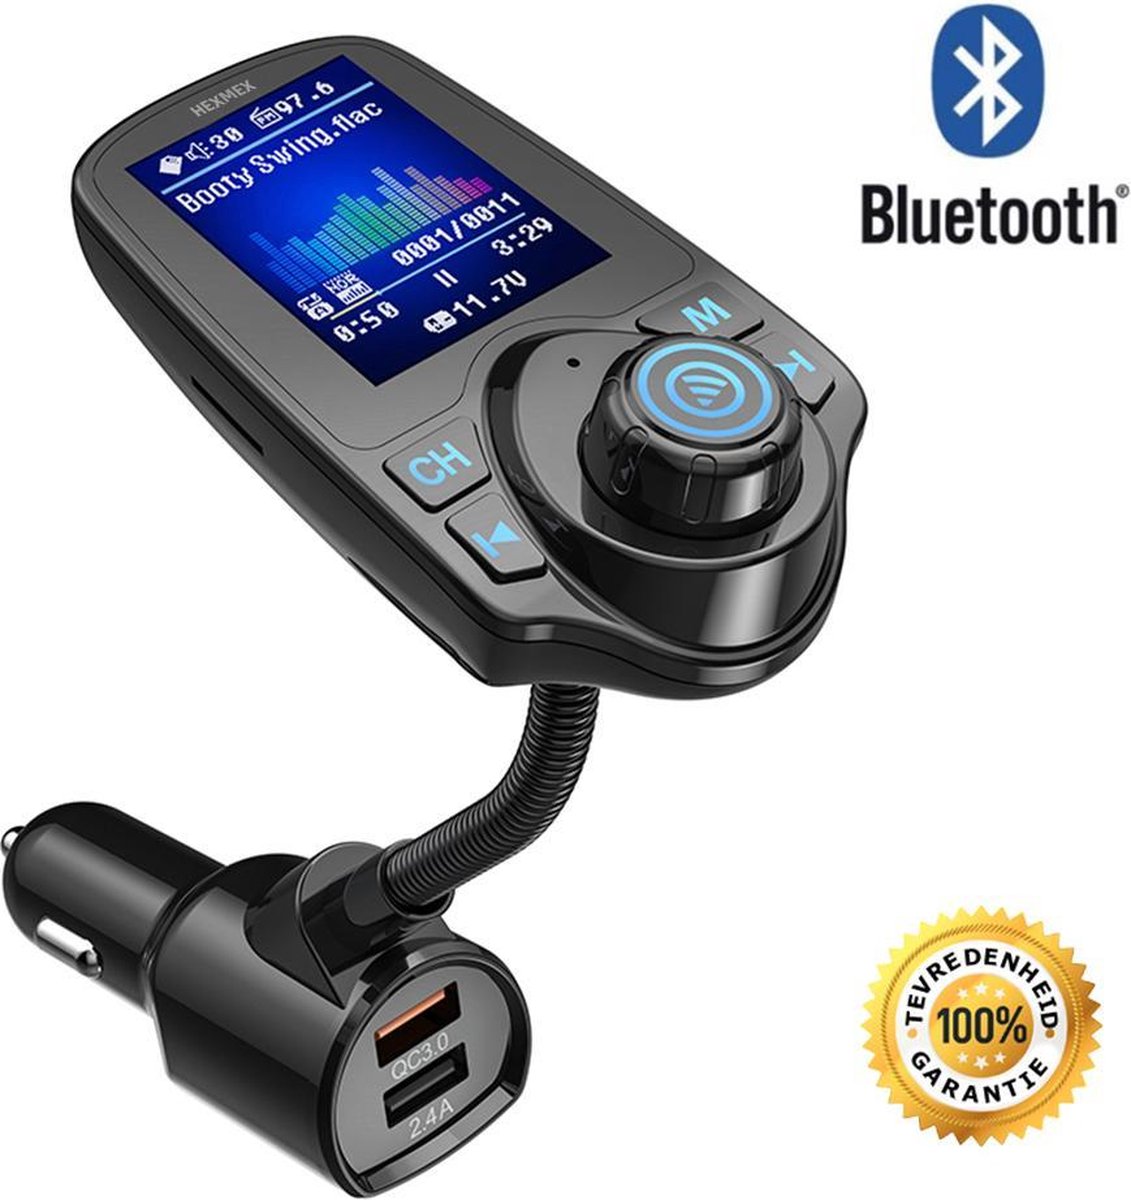 Bluetooth Carkit FM Transmitter voor in de auto - Handsfree bellen Carkit met AUX / SD kaart / USB Ingangen - Bluetooth Handsfree Carkits / adapter / muziek afspelen / auto bluetooth / LCD Display - T10D Carkit